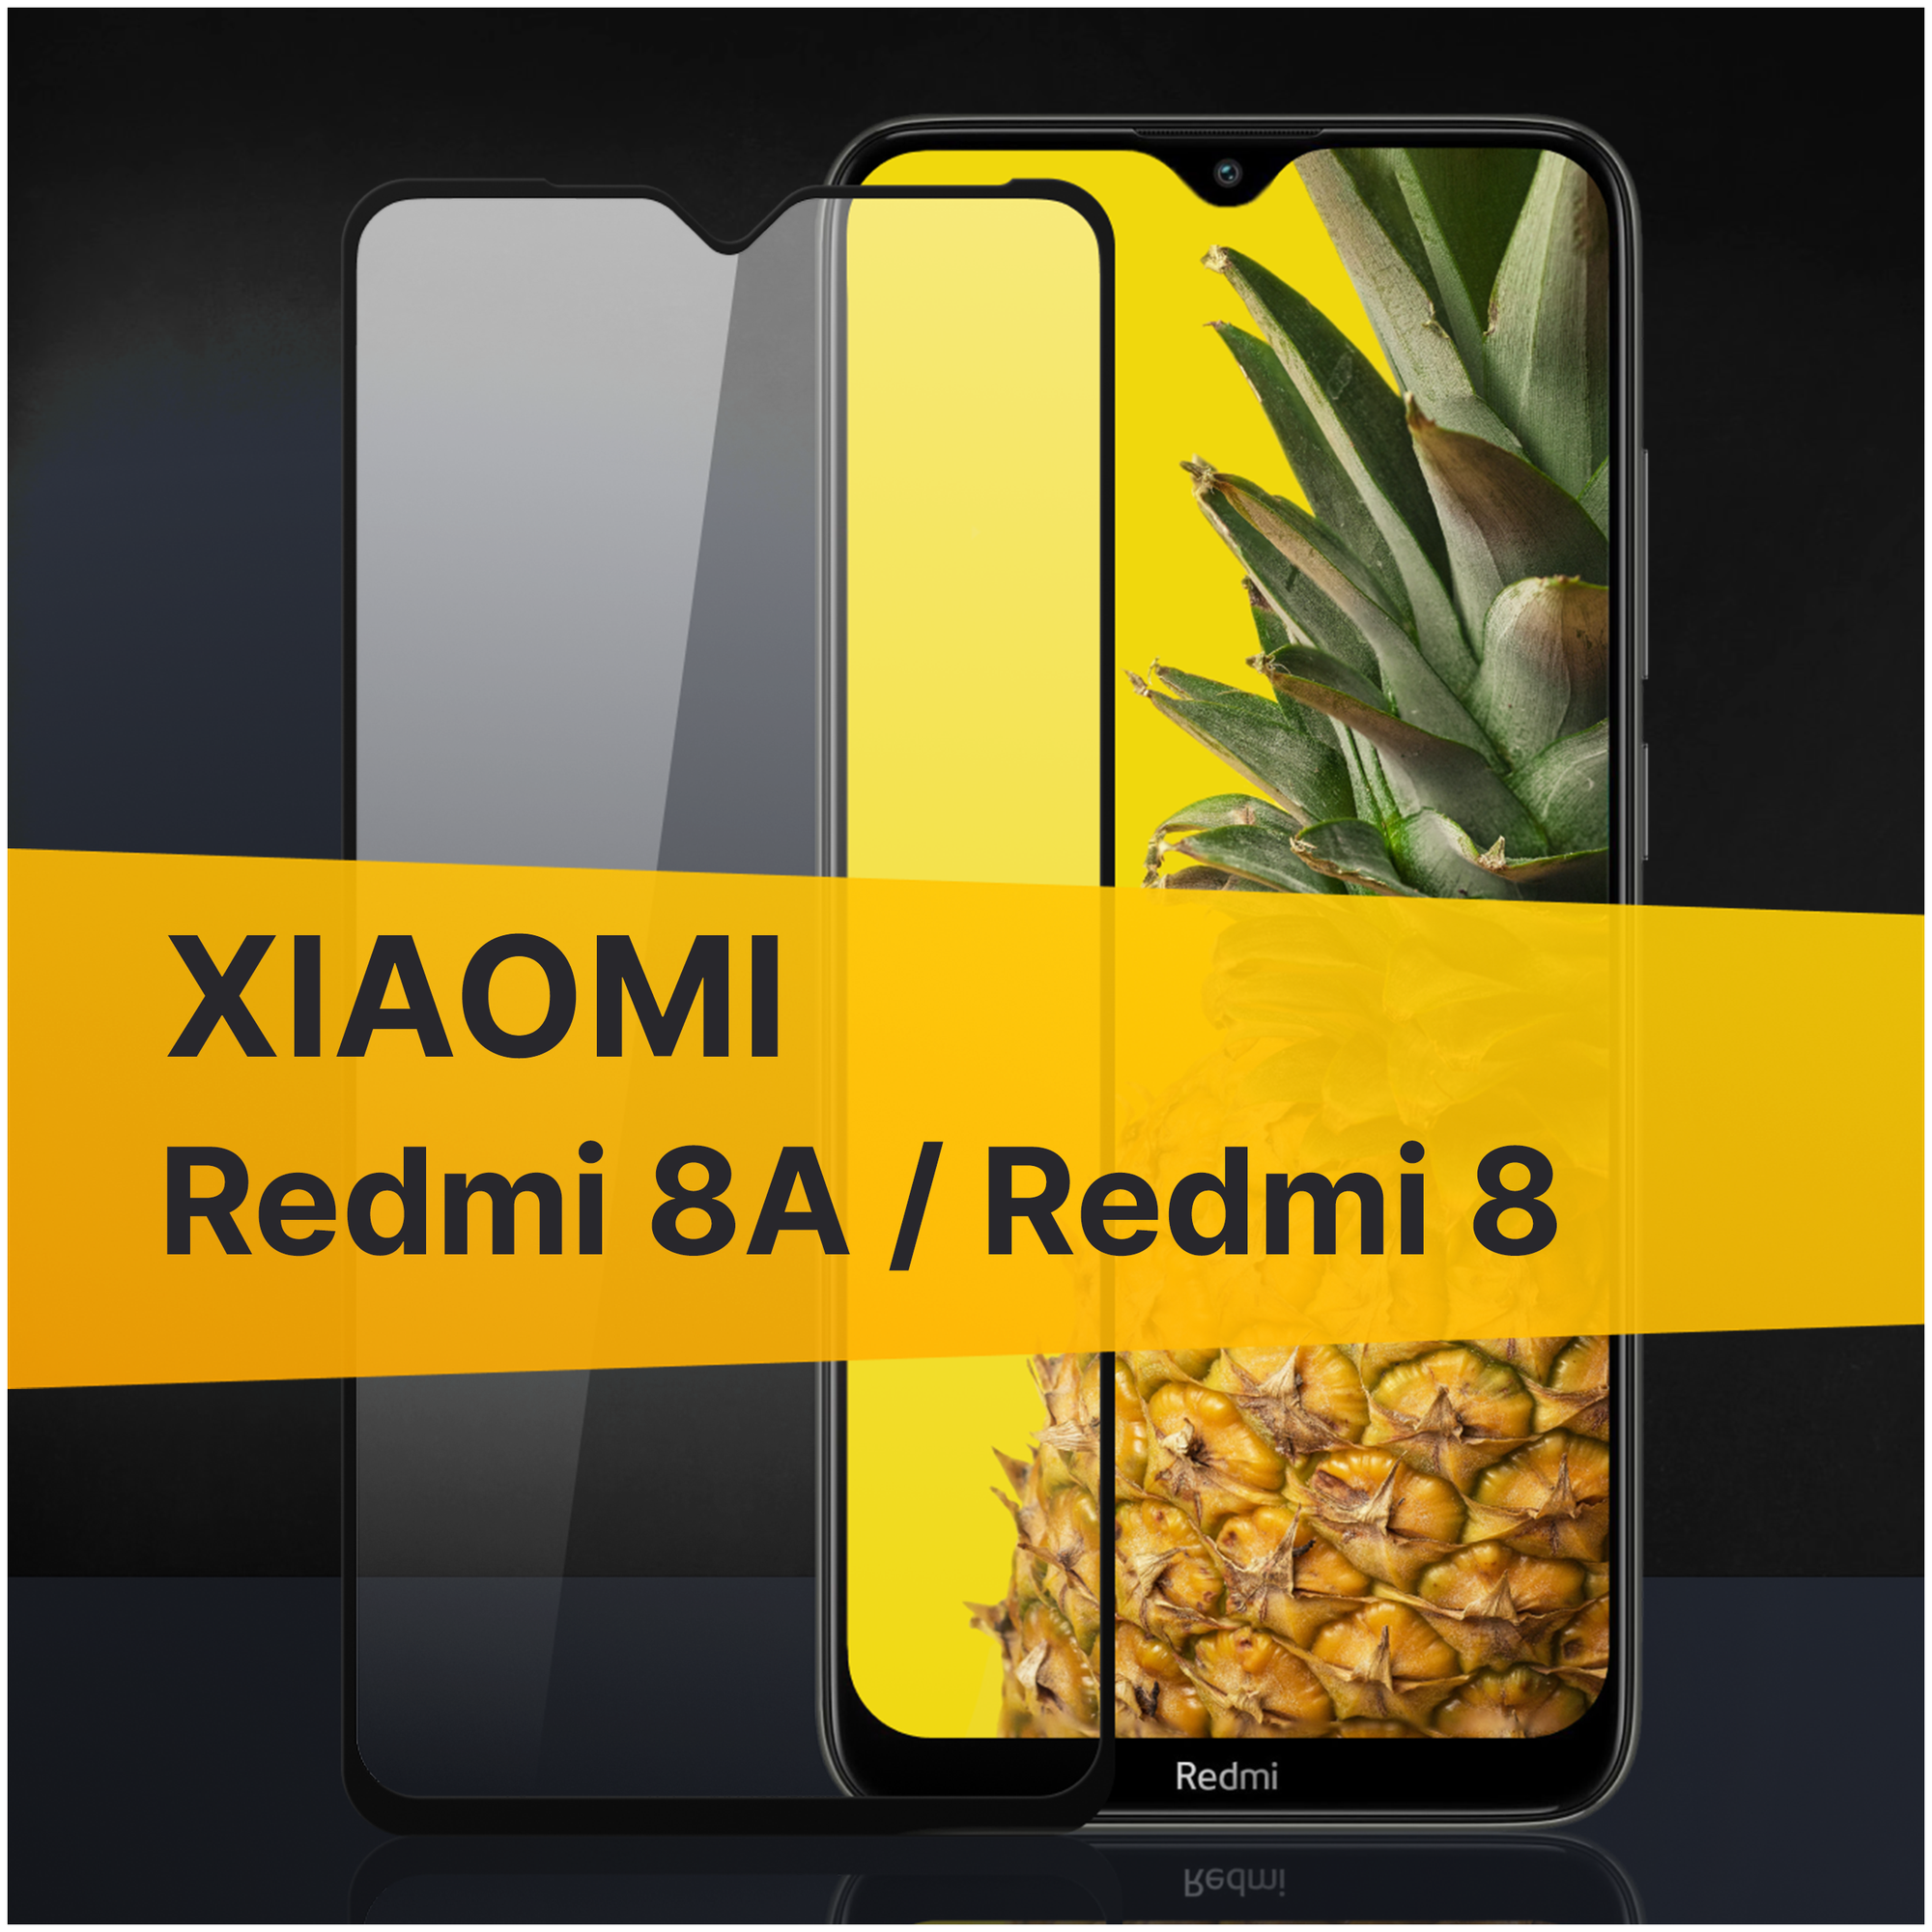 Противоударное защитное стекло для телефона Xiaomi Redmi 8A и Redmi 8 / Полноклеевое 3D стекло с олеофобным покрытием на смартфон Сяоми Редми 8А и Редми 8 / С черной рамкой